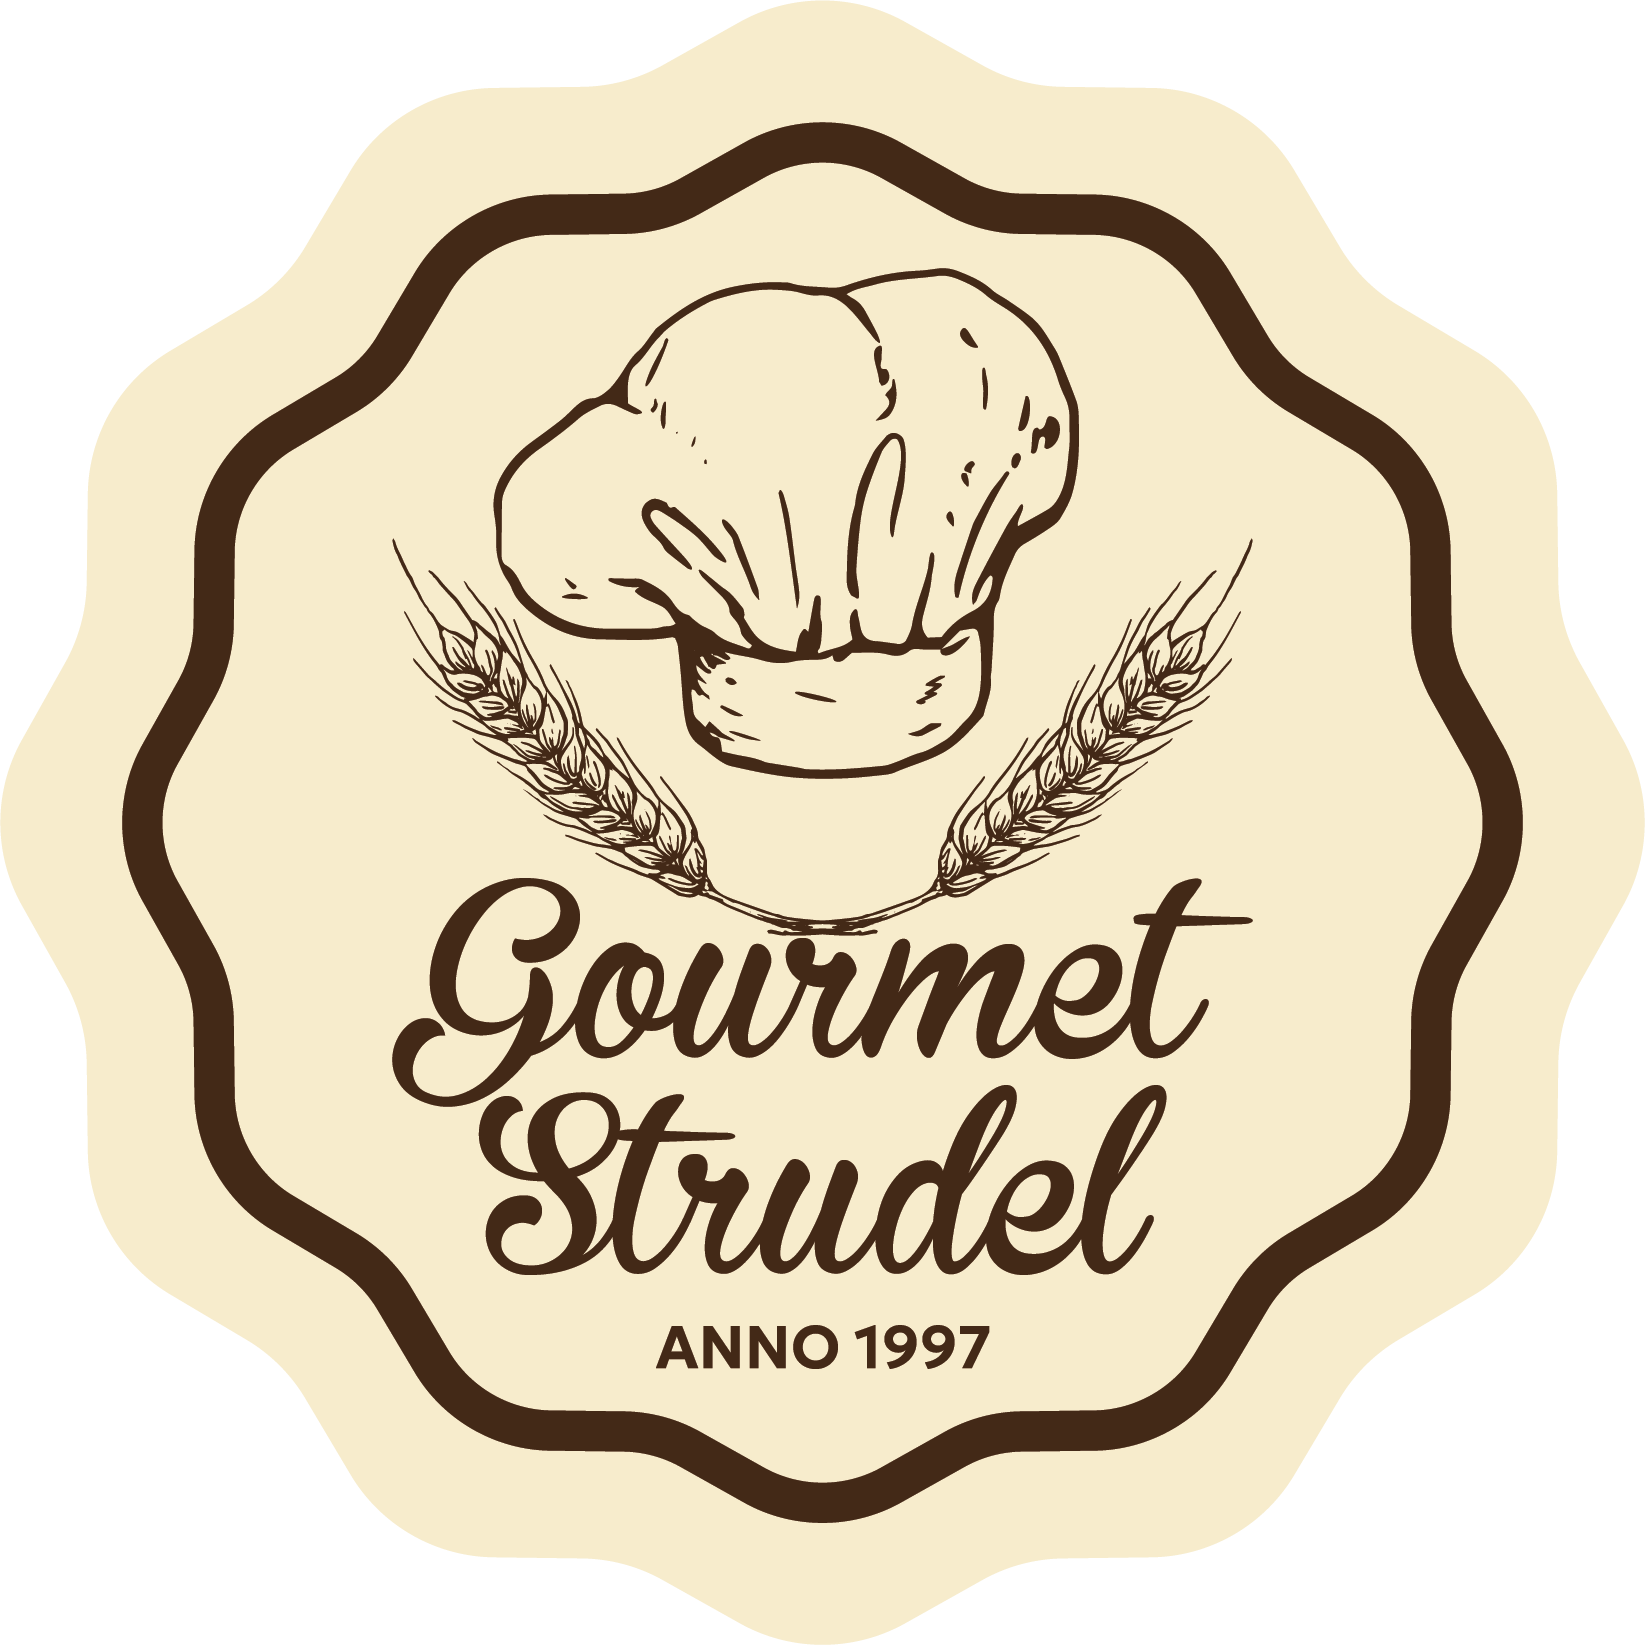 Gourmet Strudel